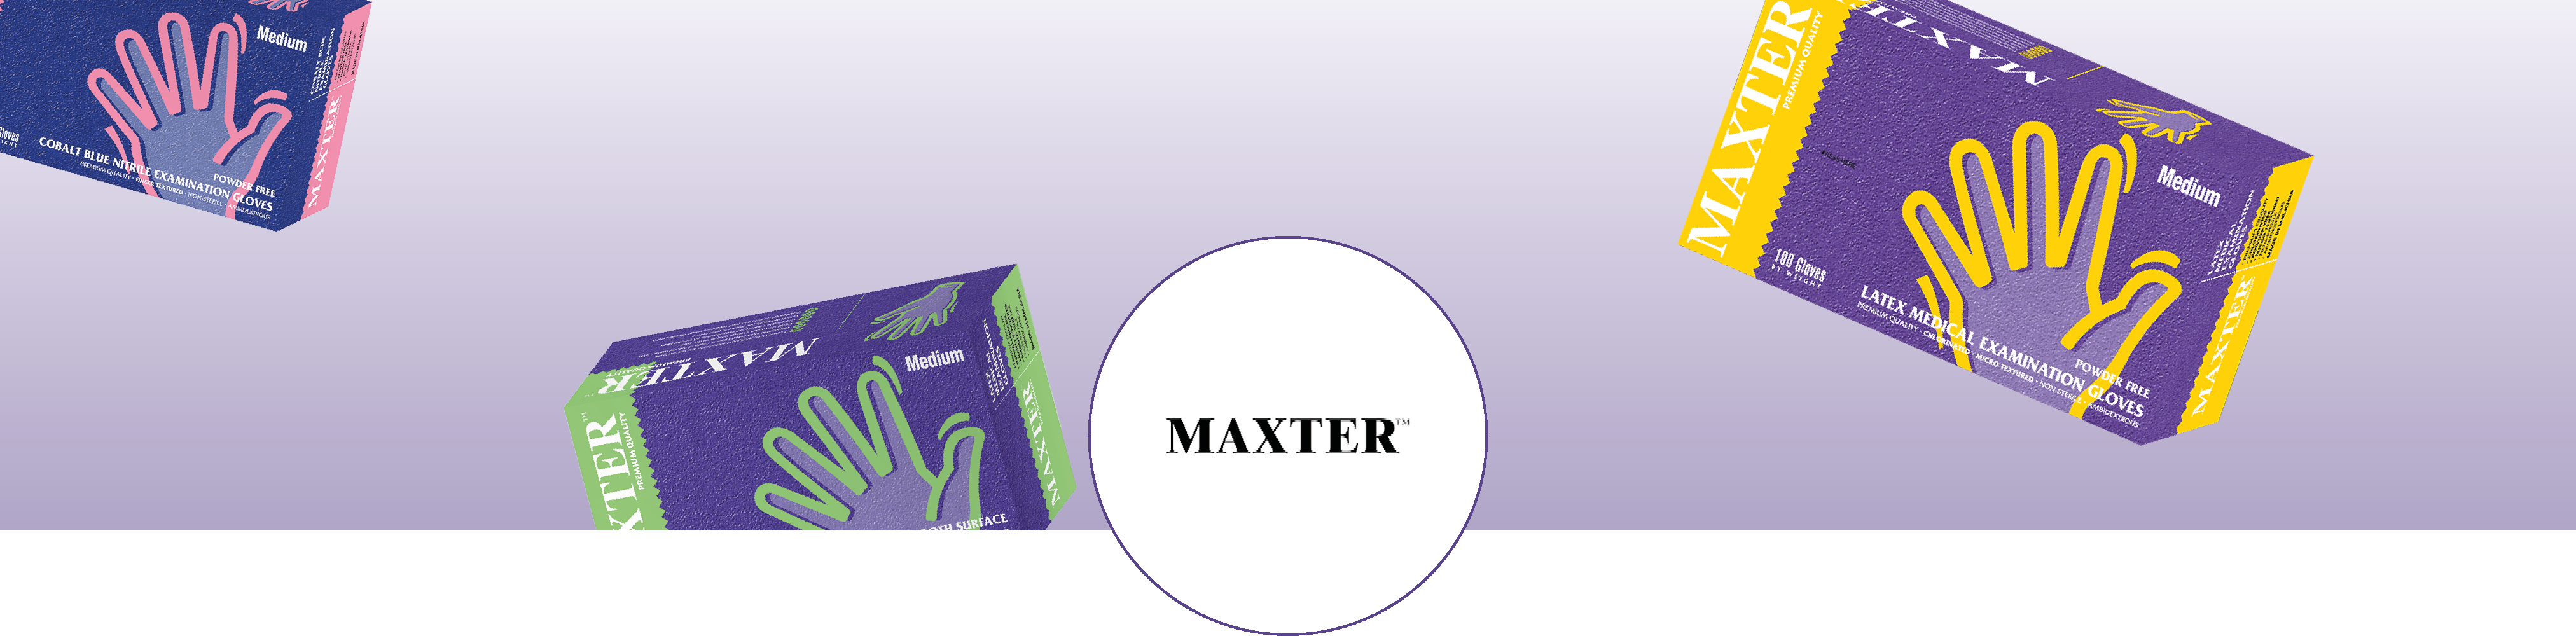 banner_maxter